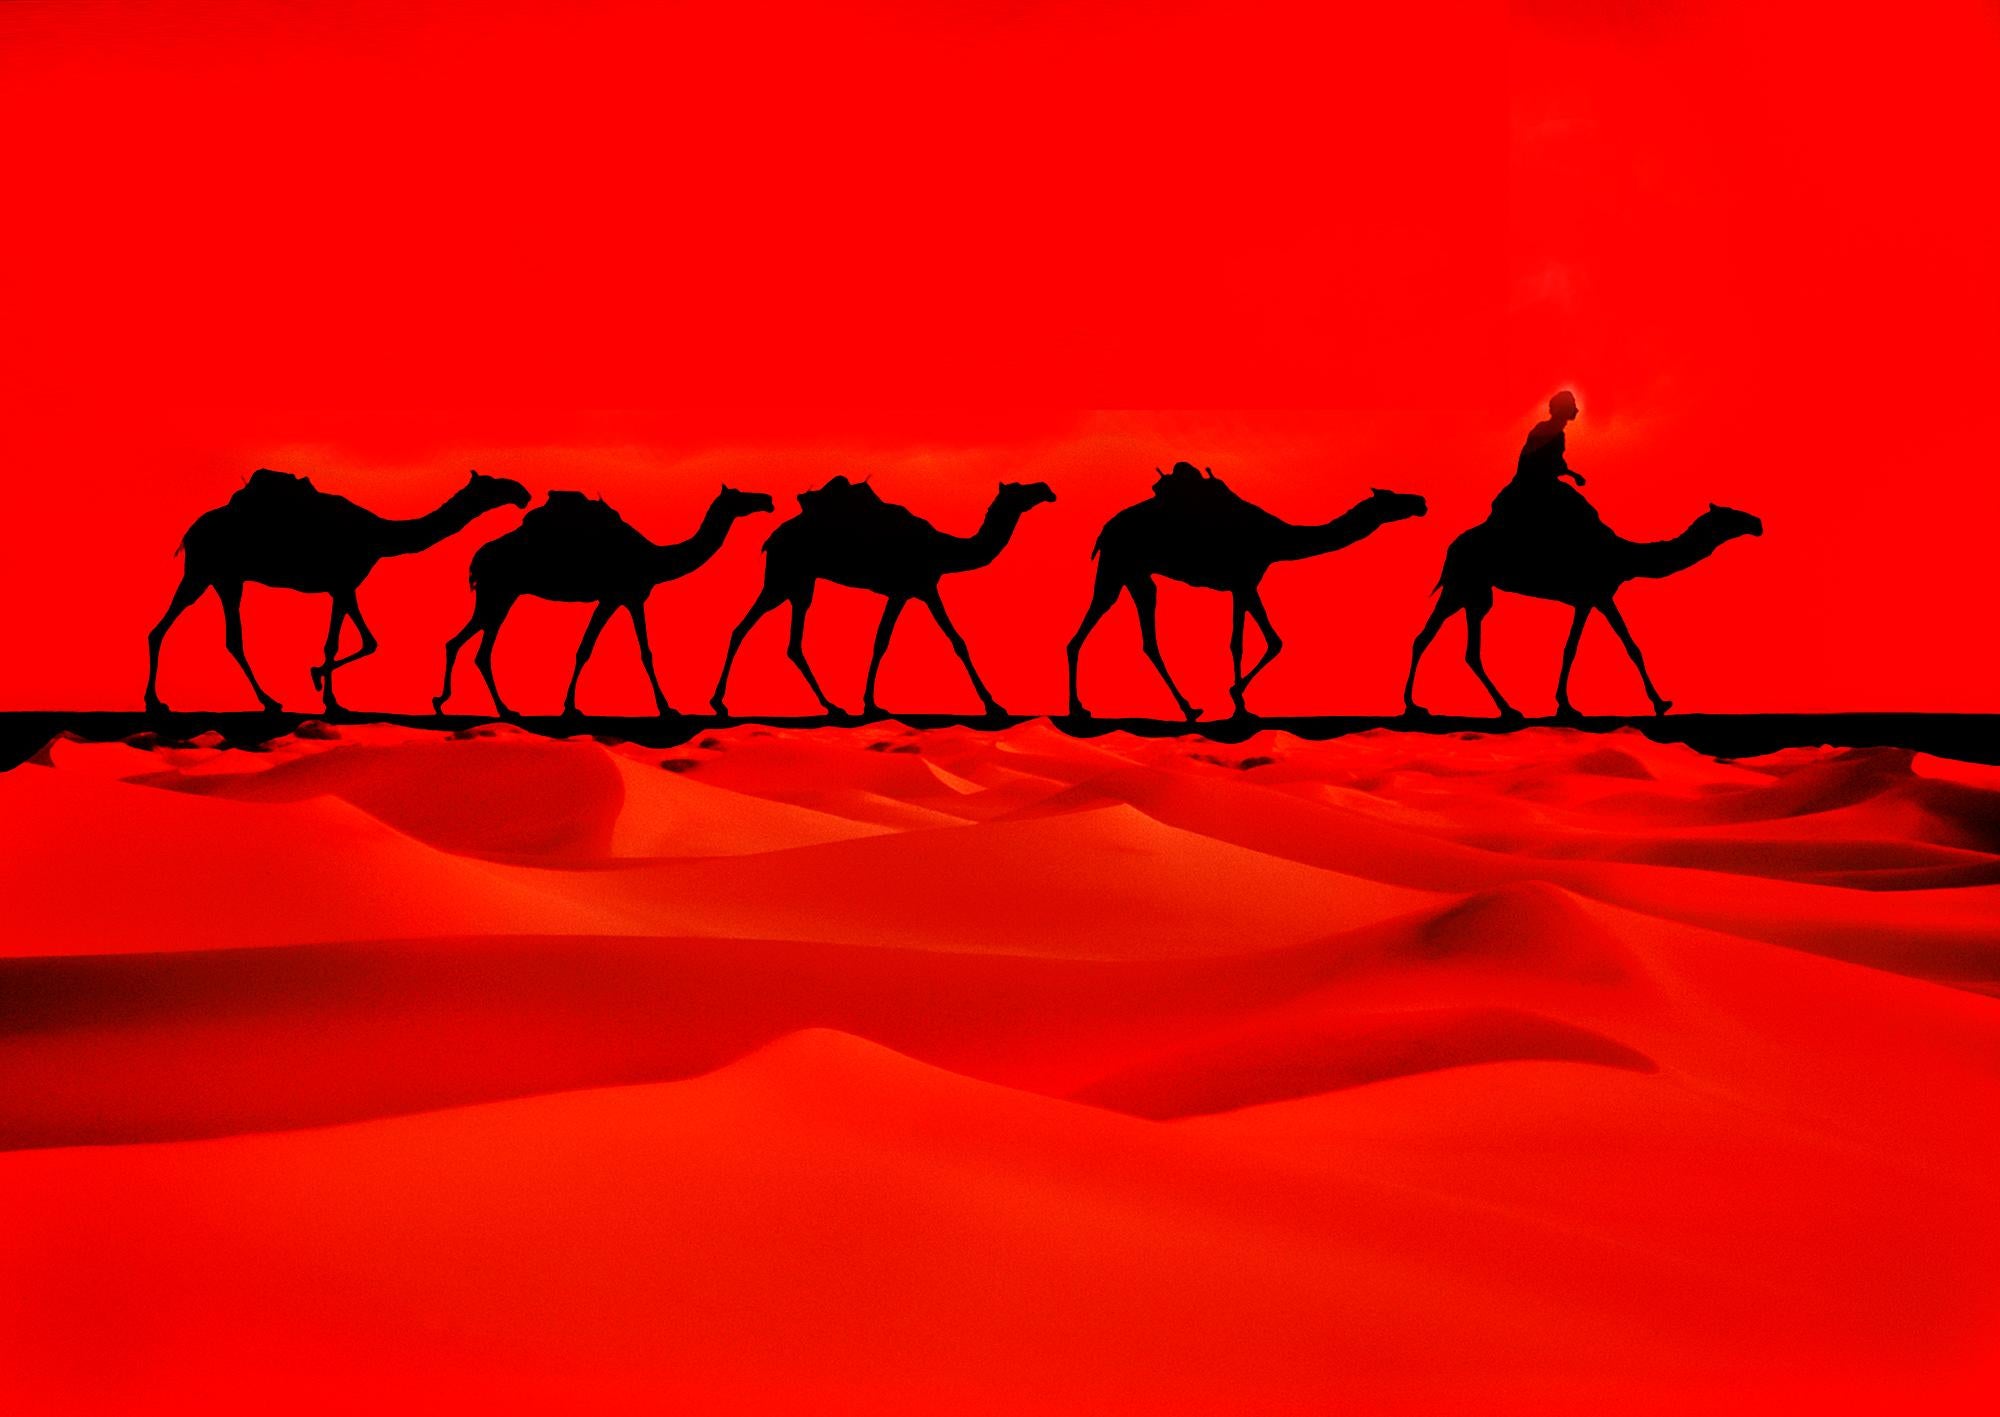 Mitchell Funk Color Photograph - Camel Caravan